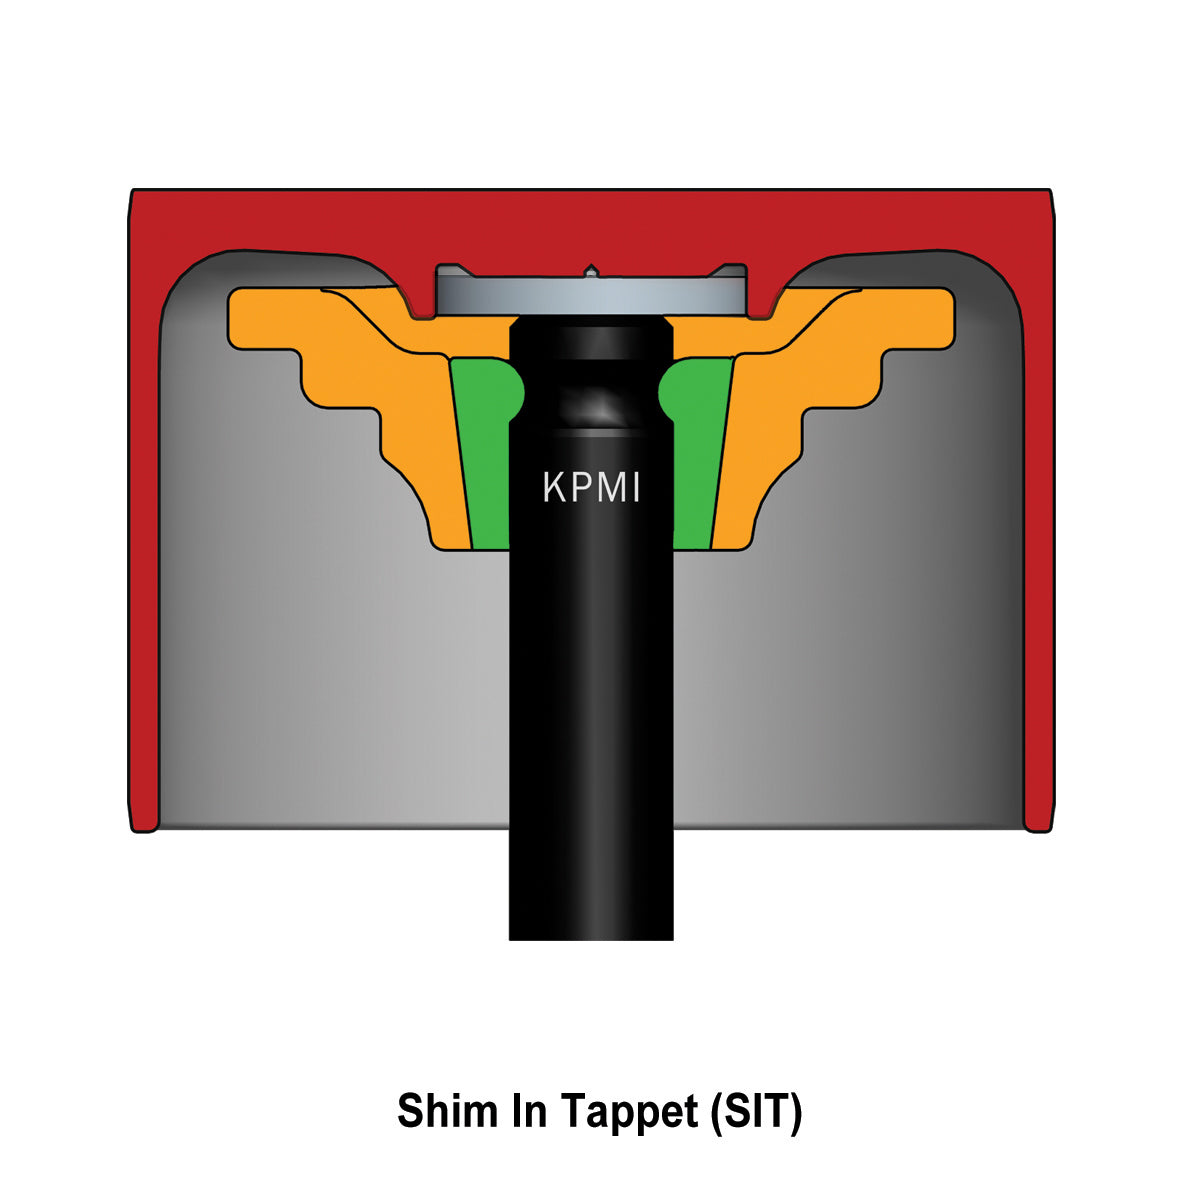 Tappet, Shim In Tappet, HT Steel, 25.98mm OD